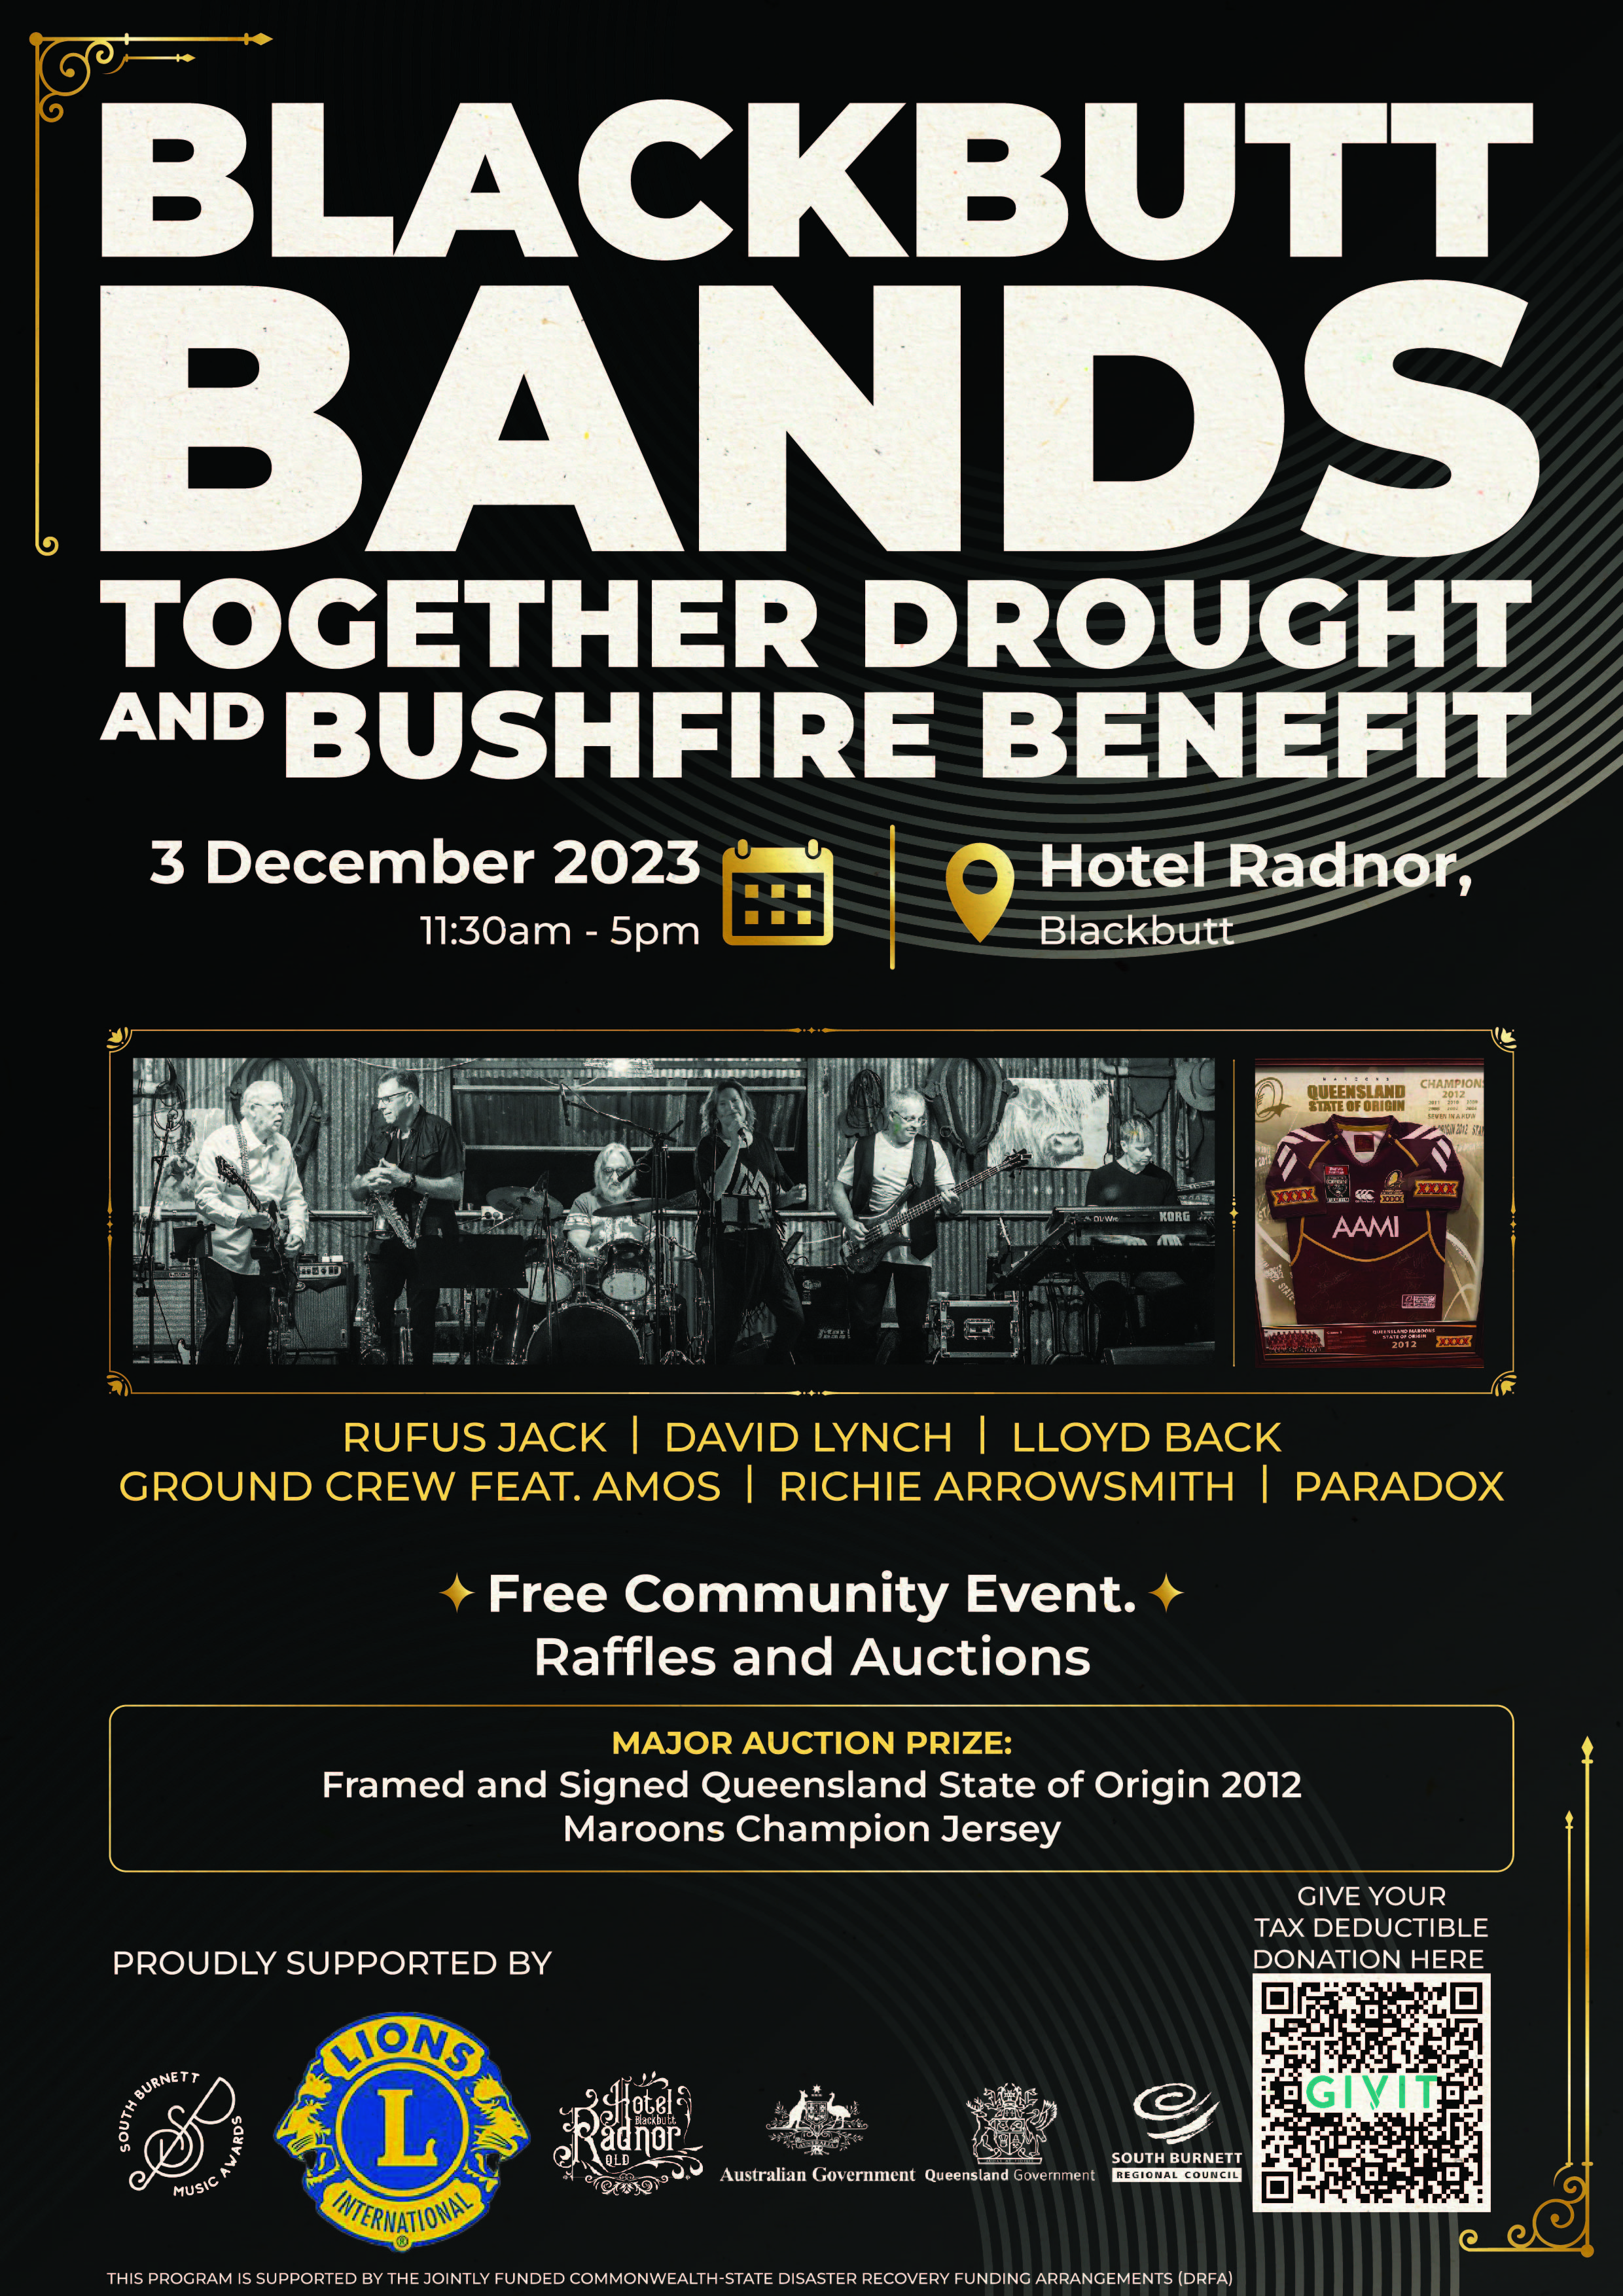 Blackbutt bands together bushfire benefit flyer